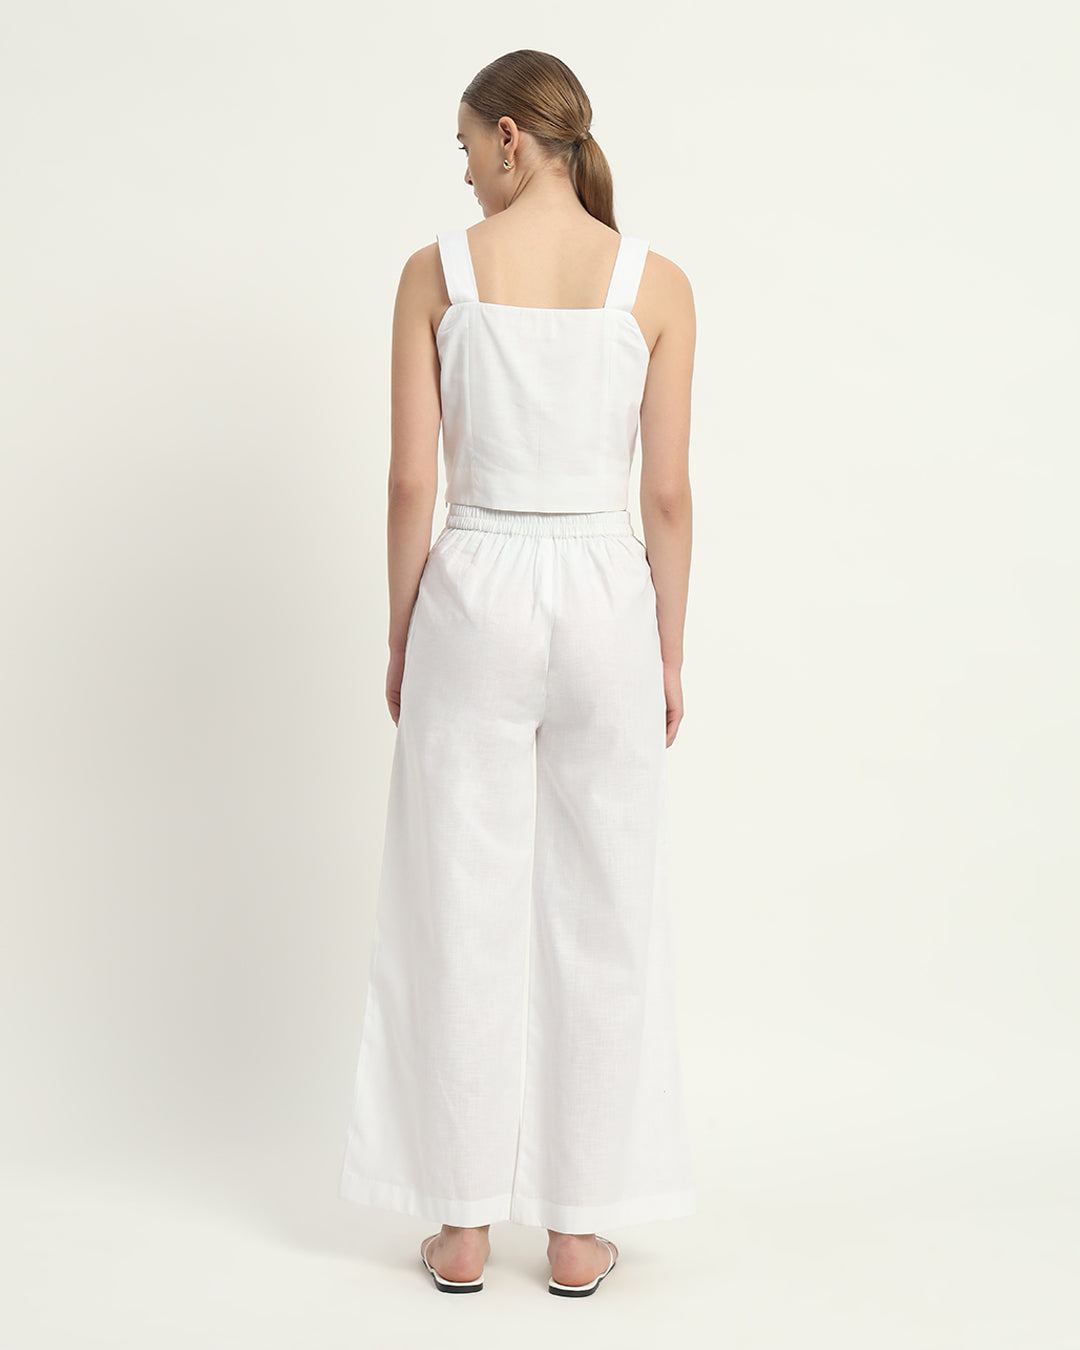 Pants Matching Set White Linen Sleek Square Crop